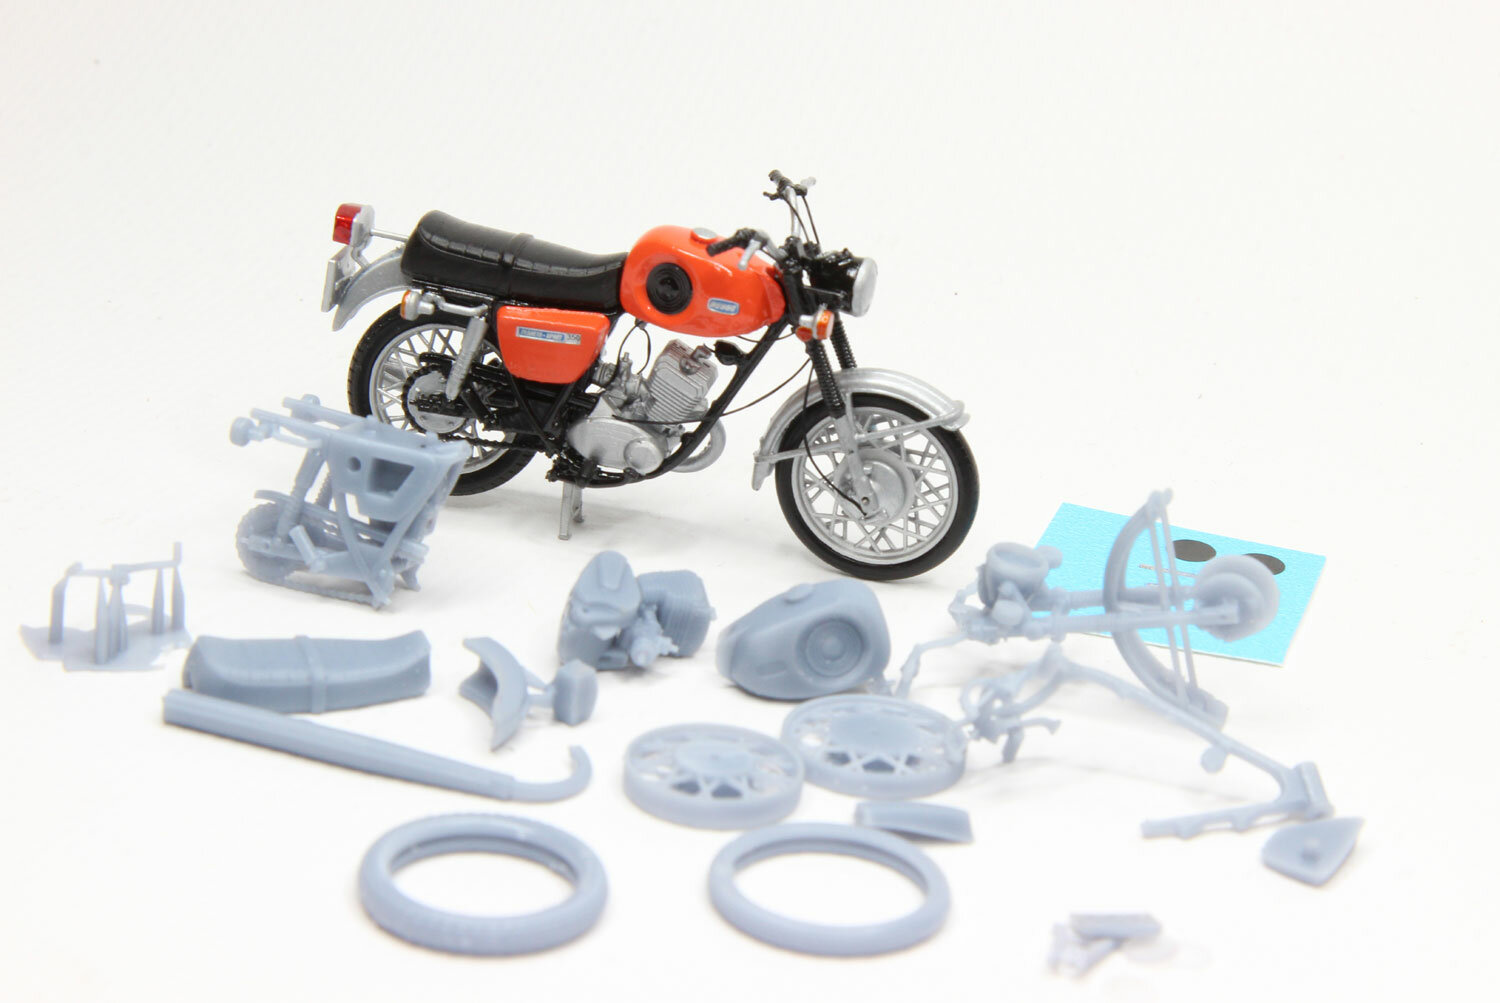 Планета-спорт модель мотоцикла (набор для самостоятельной сборки) модель в масштабе 1:35